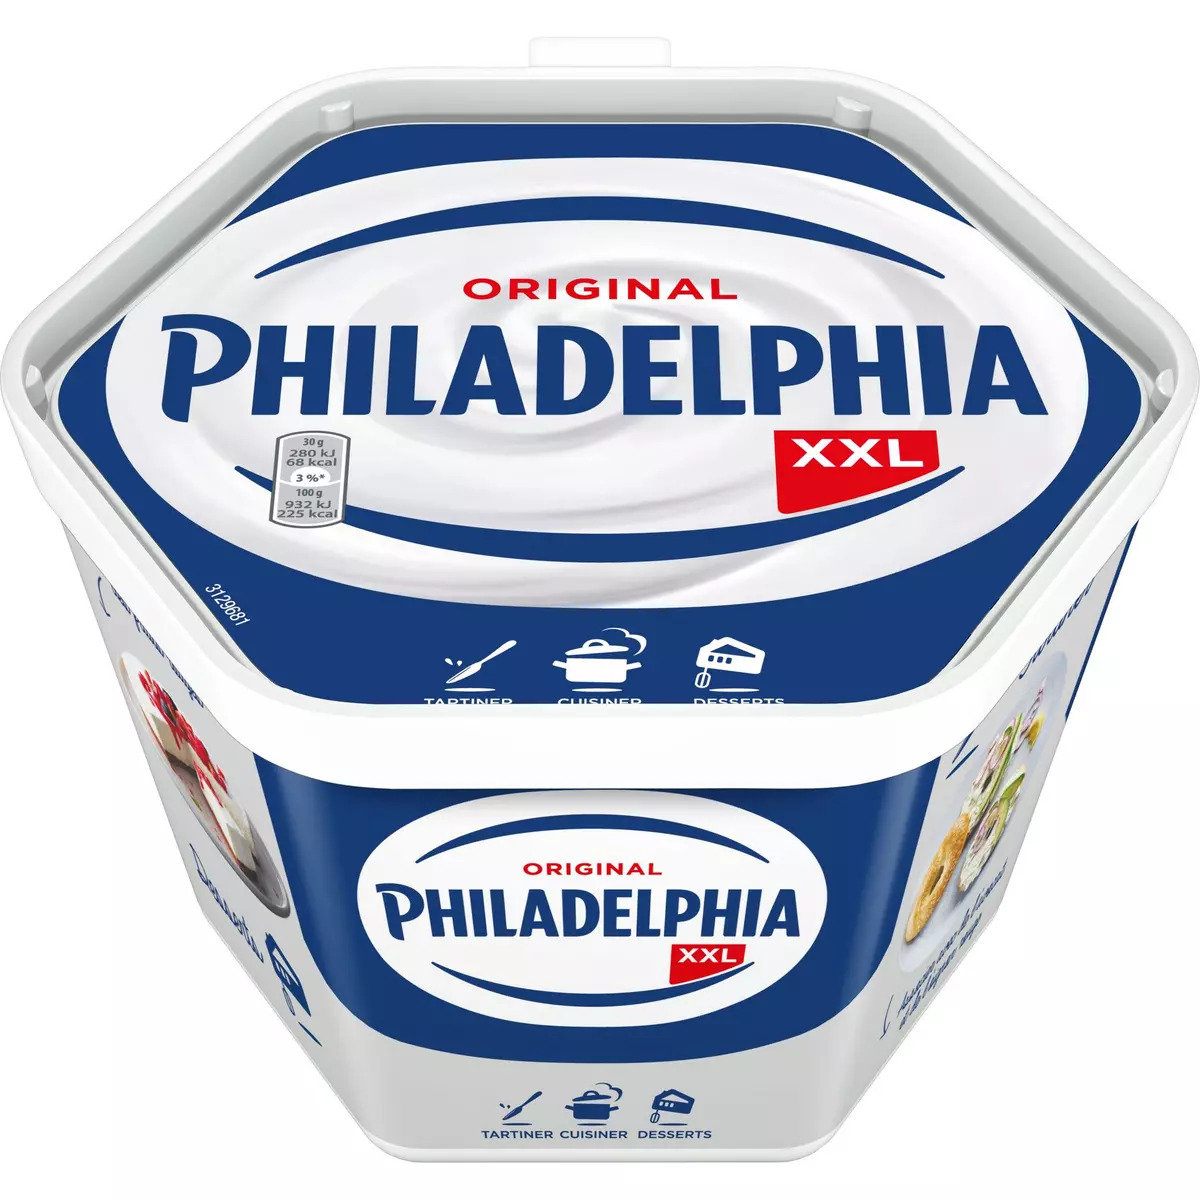 PHILADELPHIA Cream cheese nature à tartiner 500g